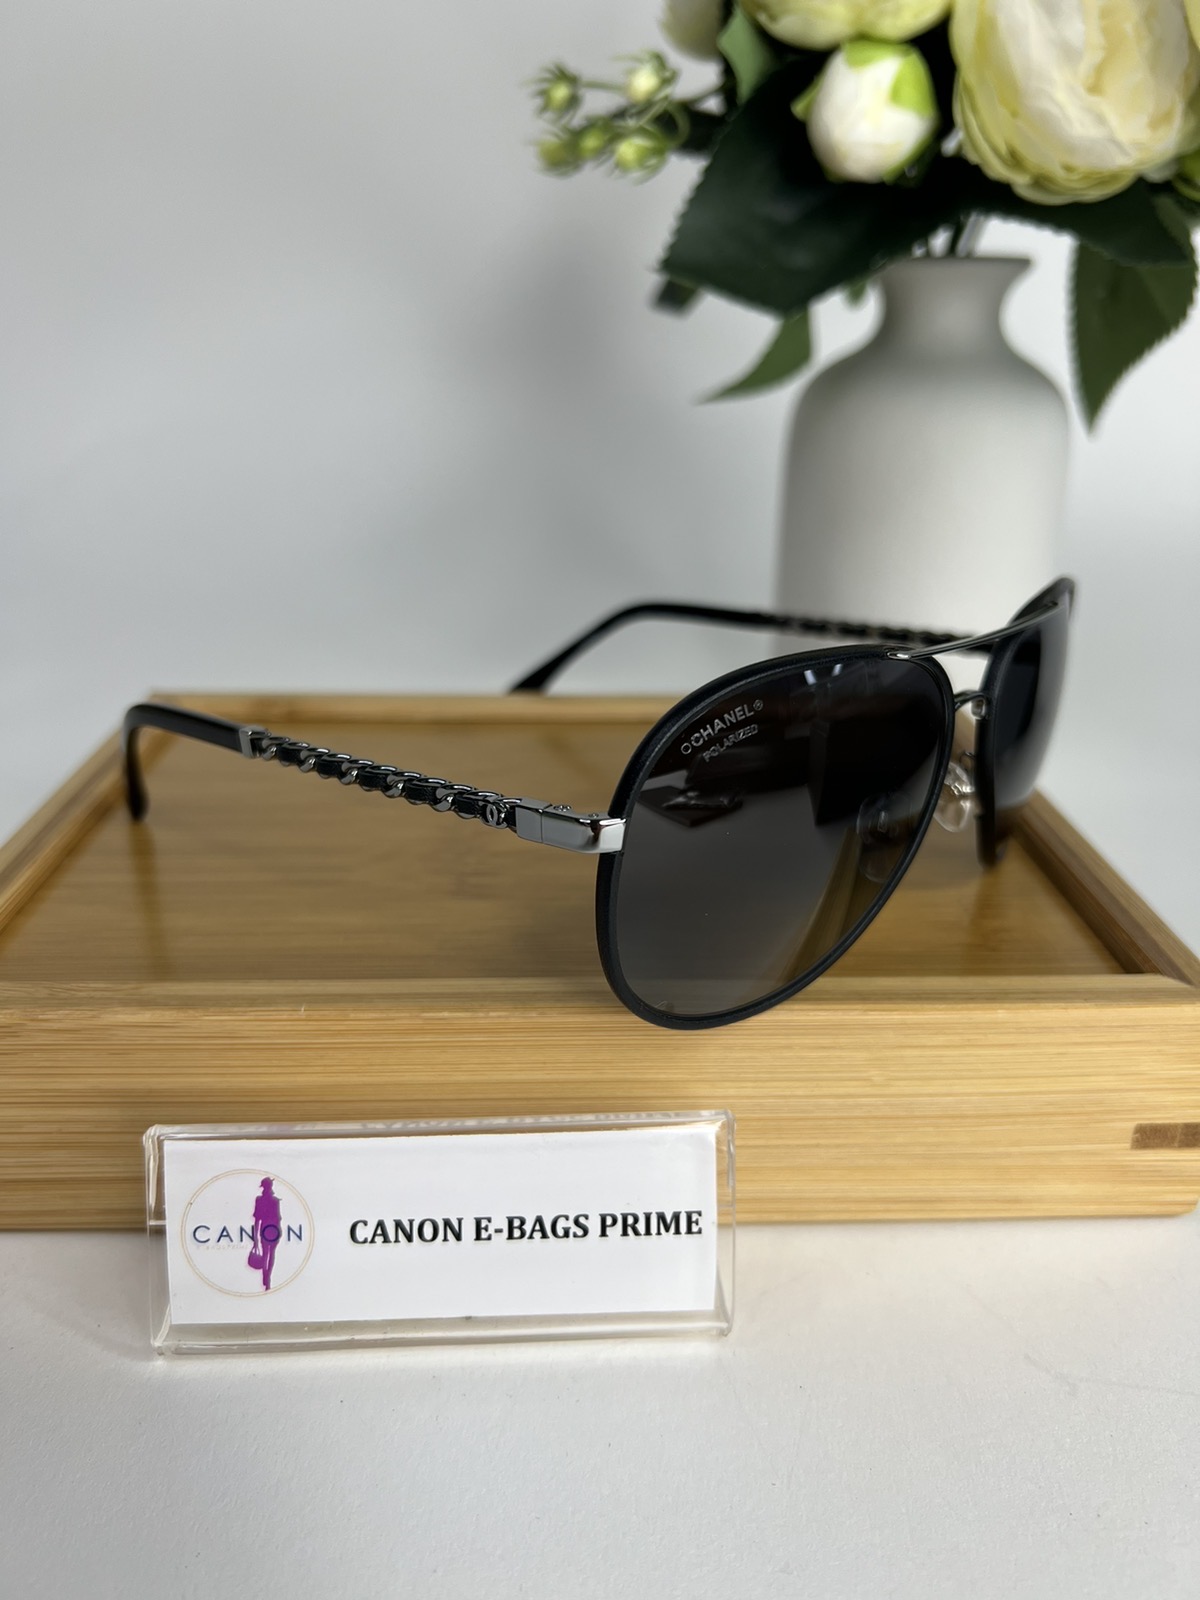 Chanel Polarized Sunglasses c.108/58 size 59. Made in Italy. No inclusions  ❤️ - Canon E-Bags Prime